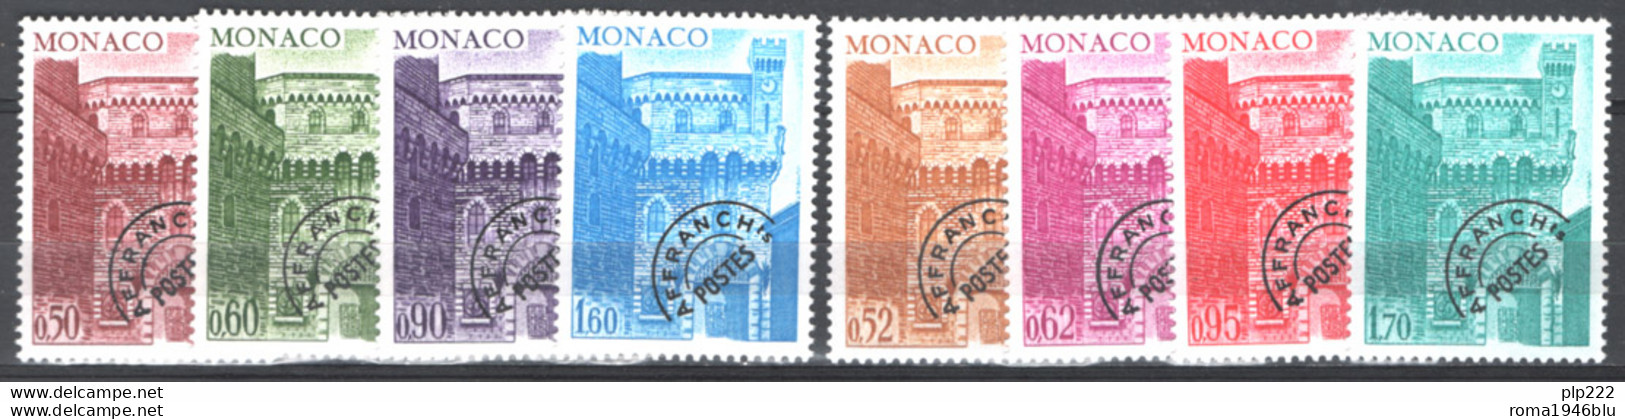 Monaco 1976 Annata Completa Con Preann / Complete Year Set With Precancel **/MNH VF - Años Completos